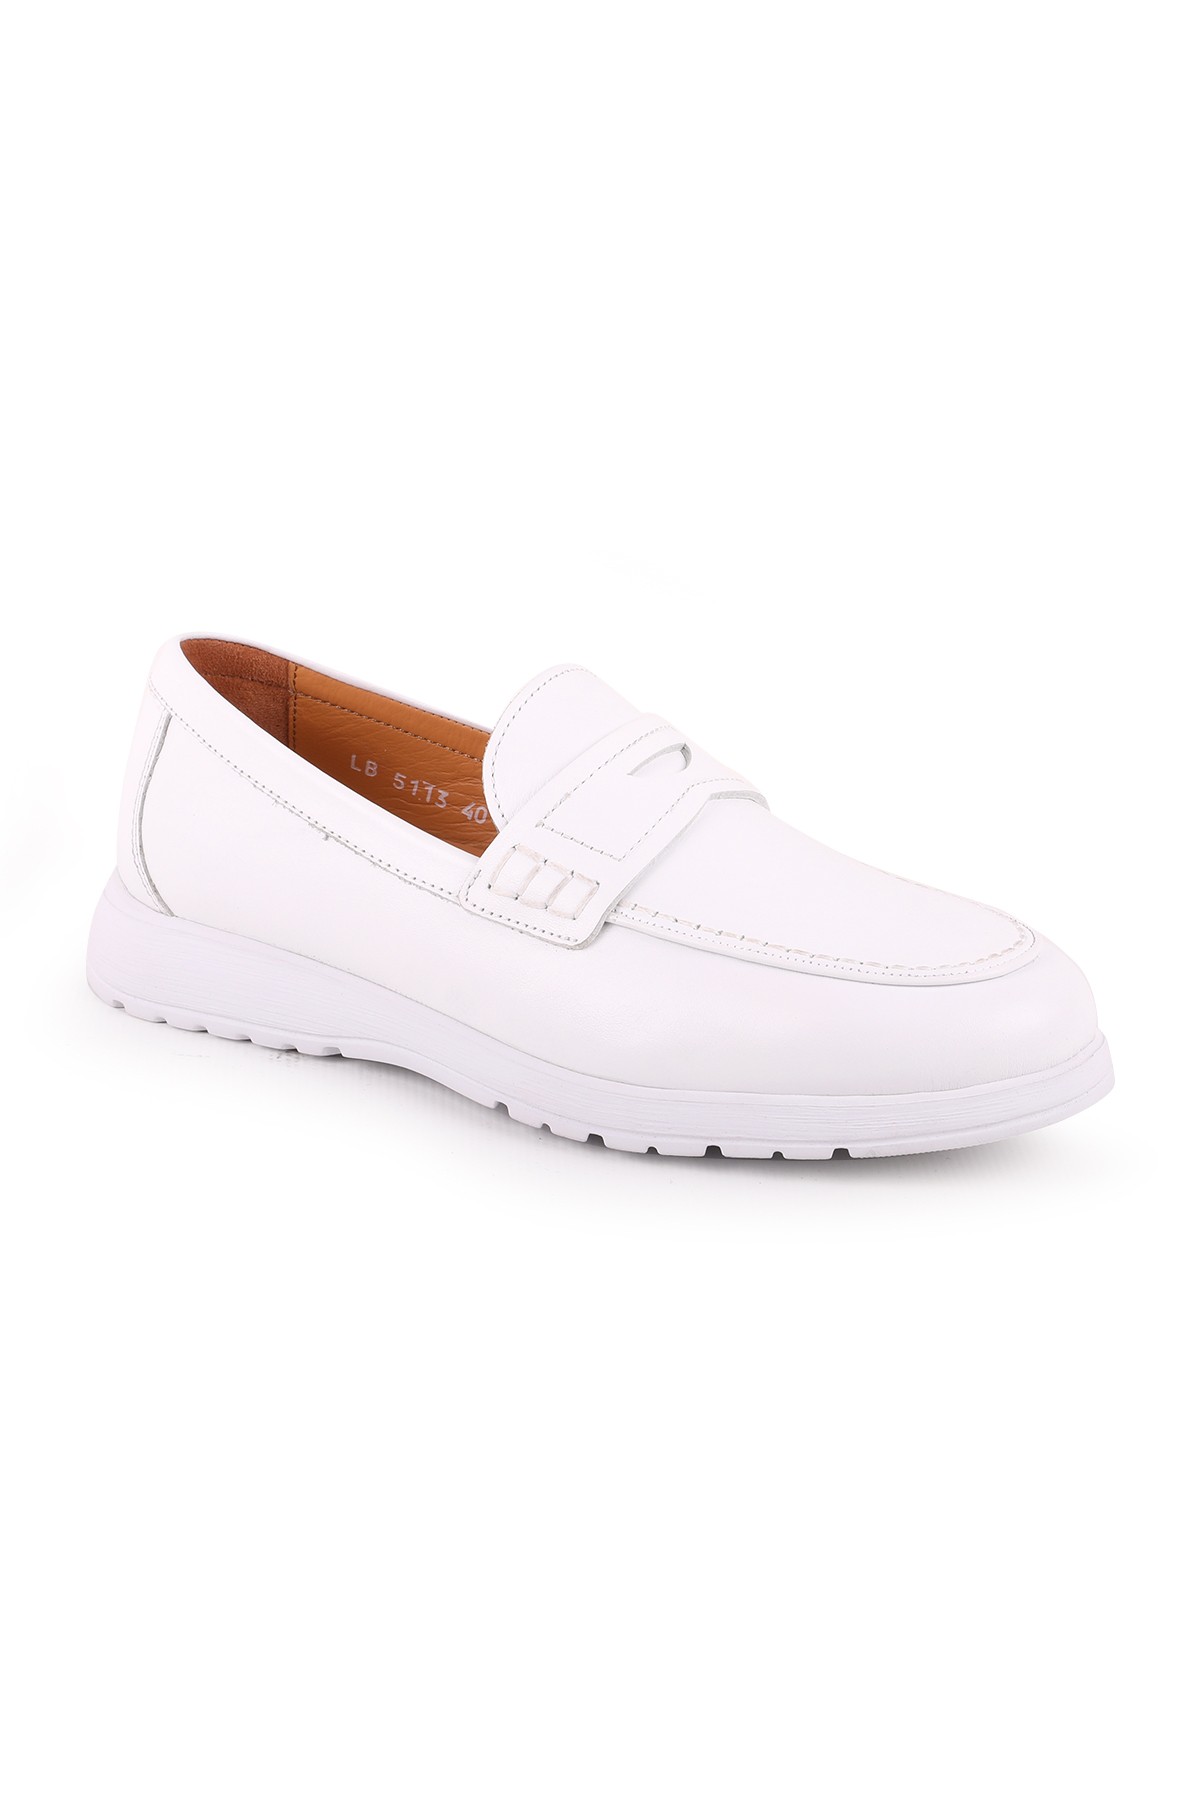 Libero L5113 Deri Erkek Casual Ayakkabı BEYAZ - Beyaz